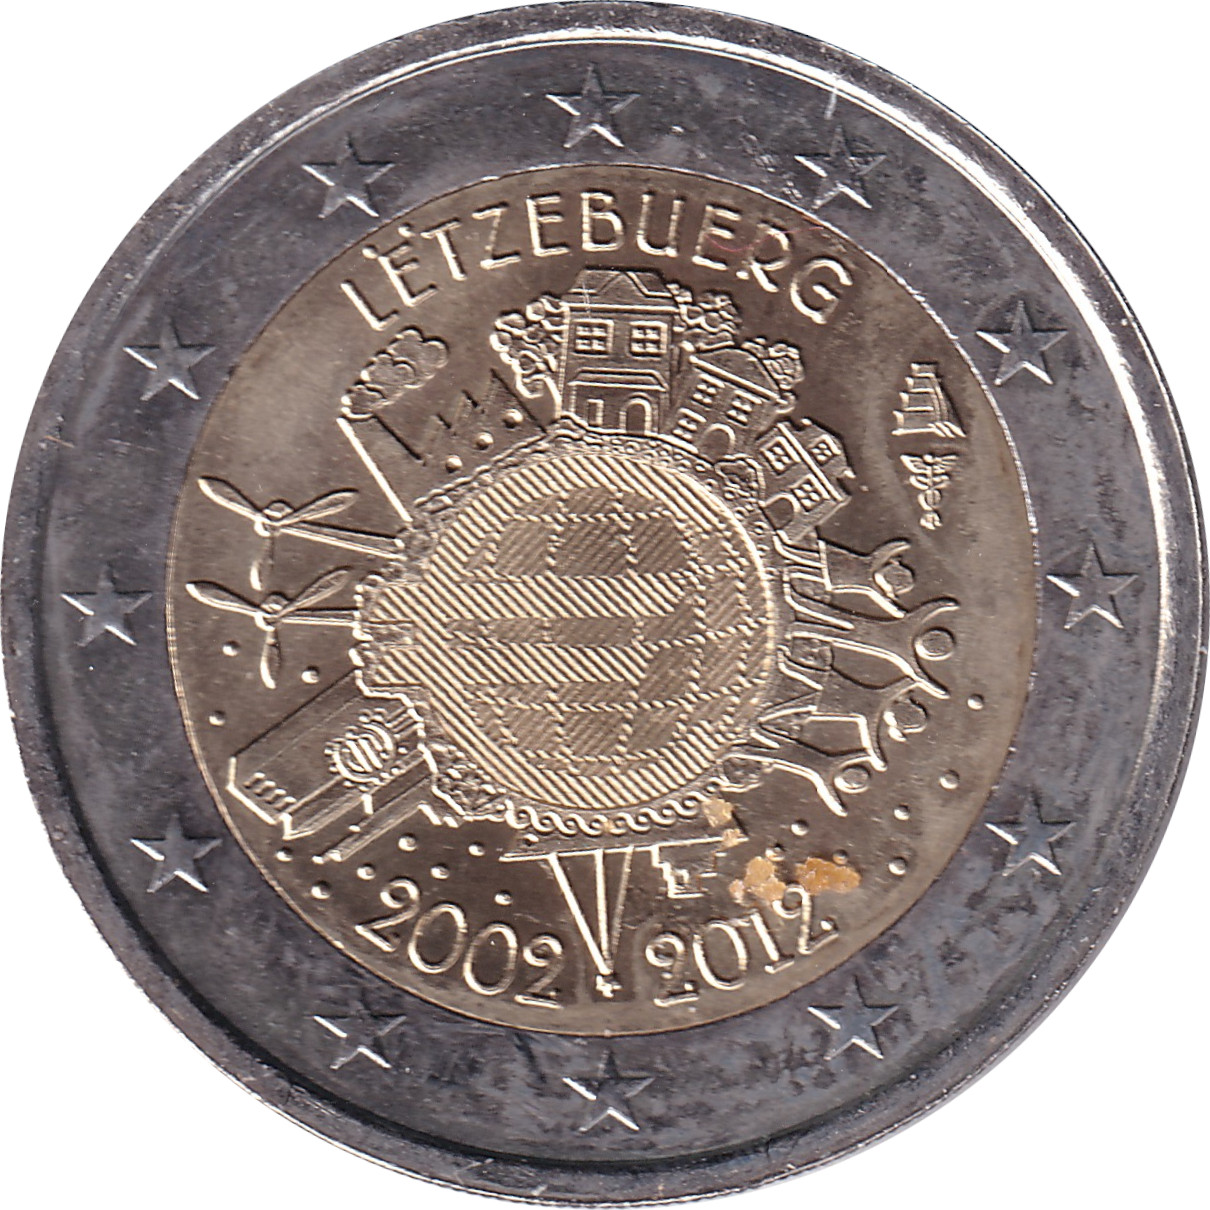 2 euro - Mise en circulation de l'Euro - Luxembourg